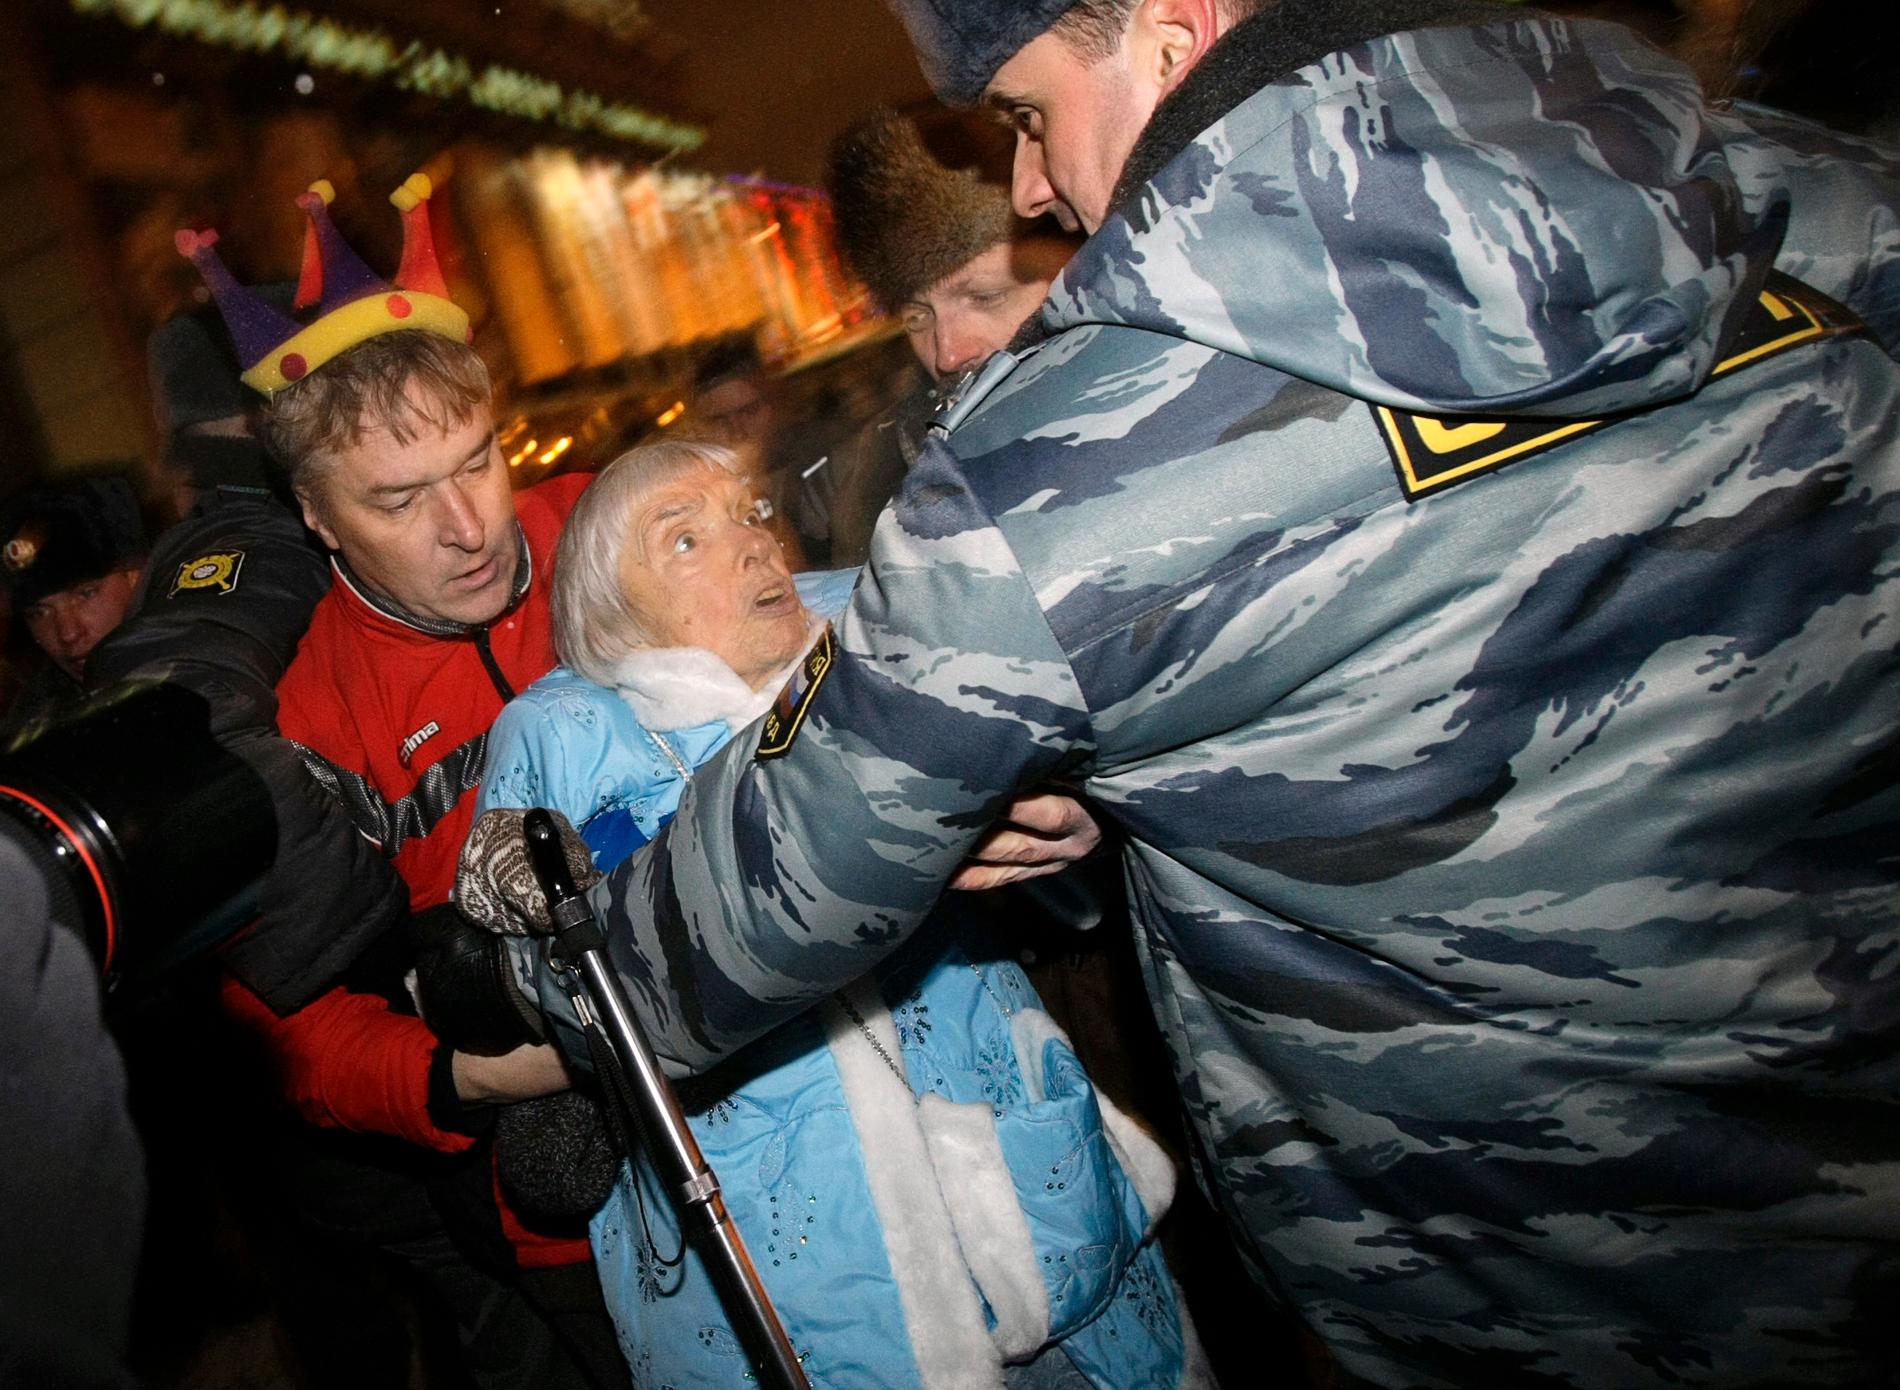 Polis griper Ljudmila Aleksejeva i samband med regeringskritiska protester i Moskva på nyårsafton 2009. Aleksejeva var då 82 år gammal.